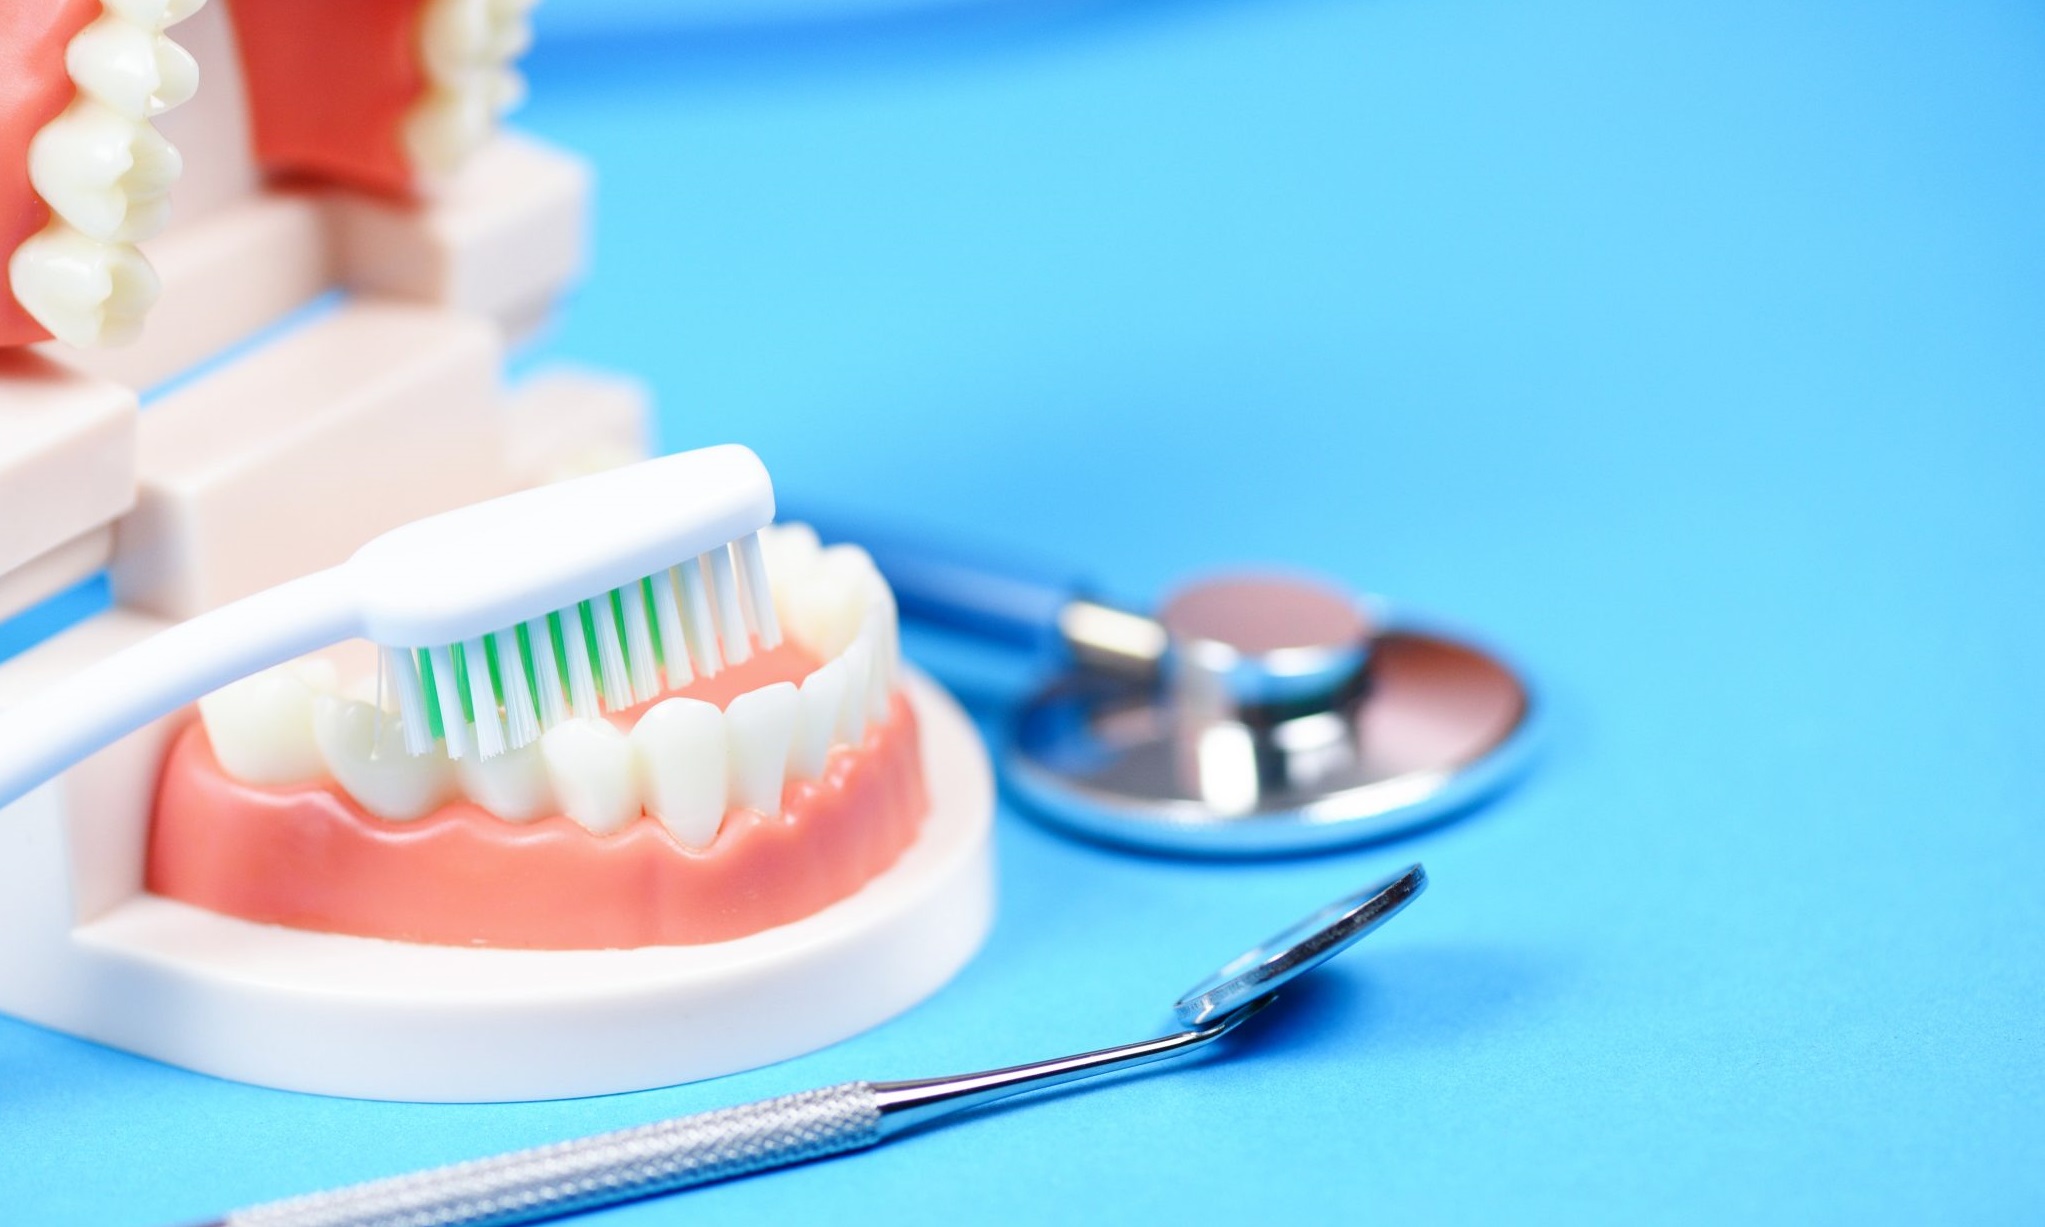 پروتز دندان بهتر است یا ایمپلنت؟(تجربیات کاربران)